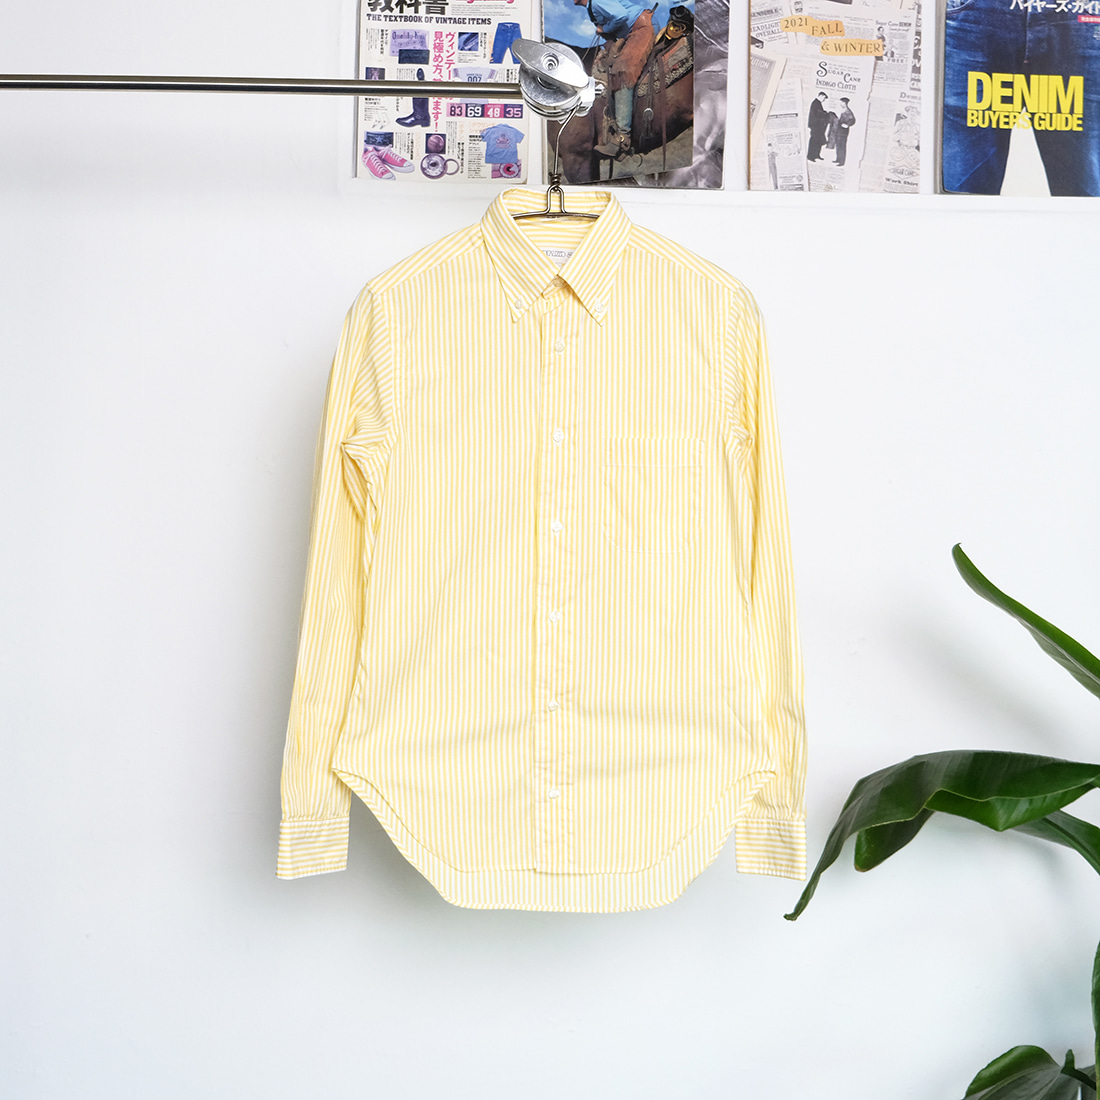 인디비쥬얼라이즈드 셔츠 / Made in usa  Individualized shirt 50 years celebrating stripe shirt